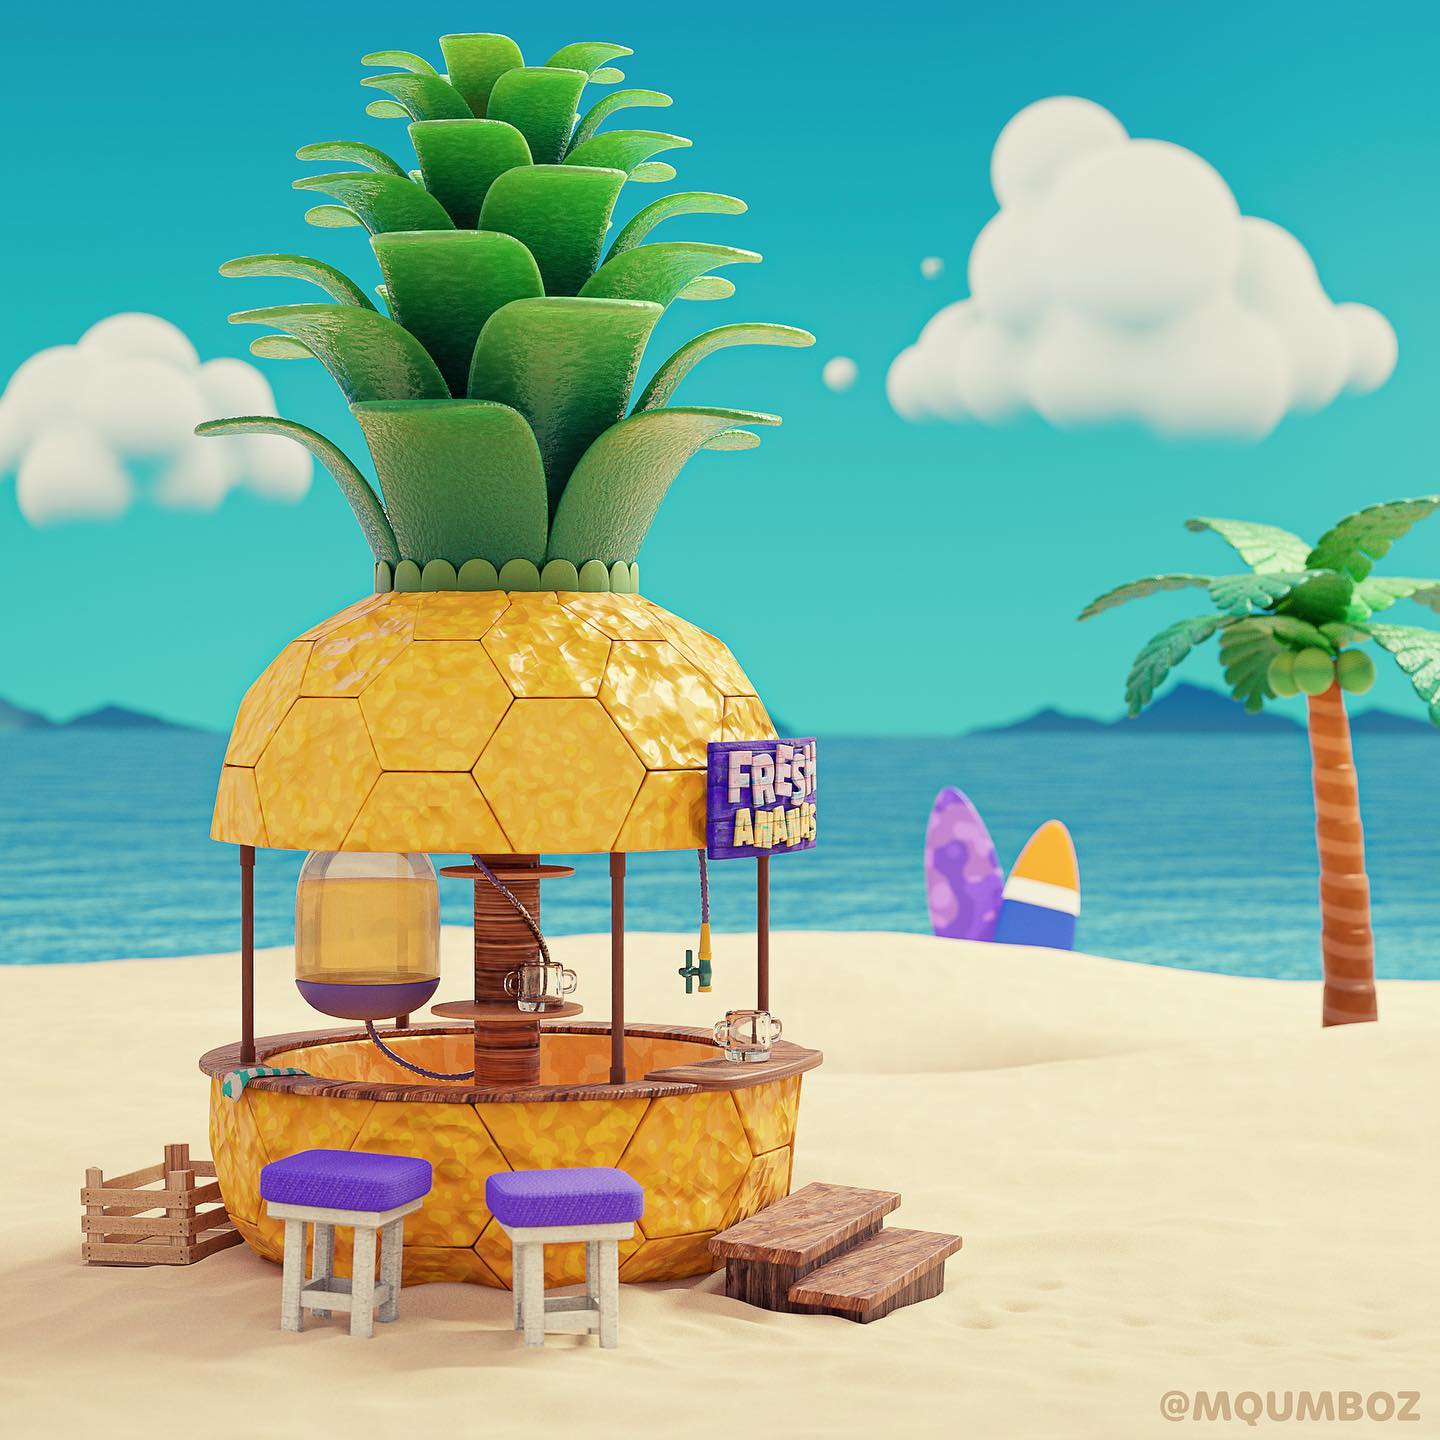 Pineapple themed juice bar on the beach